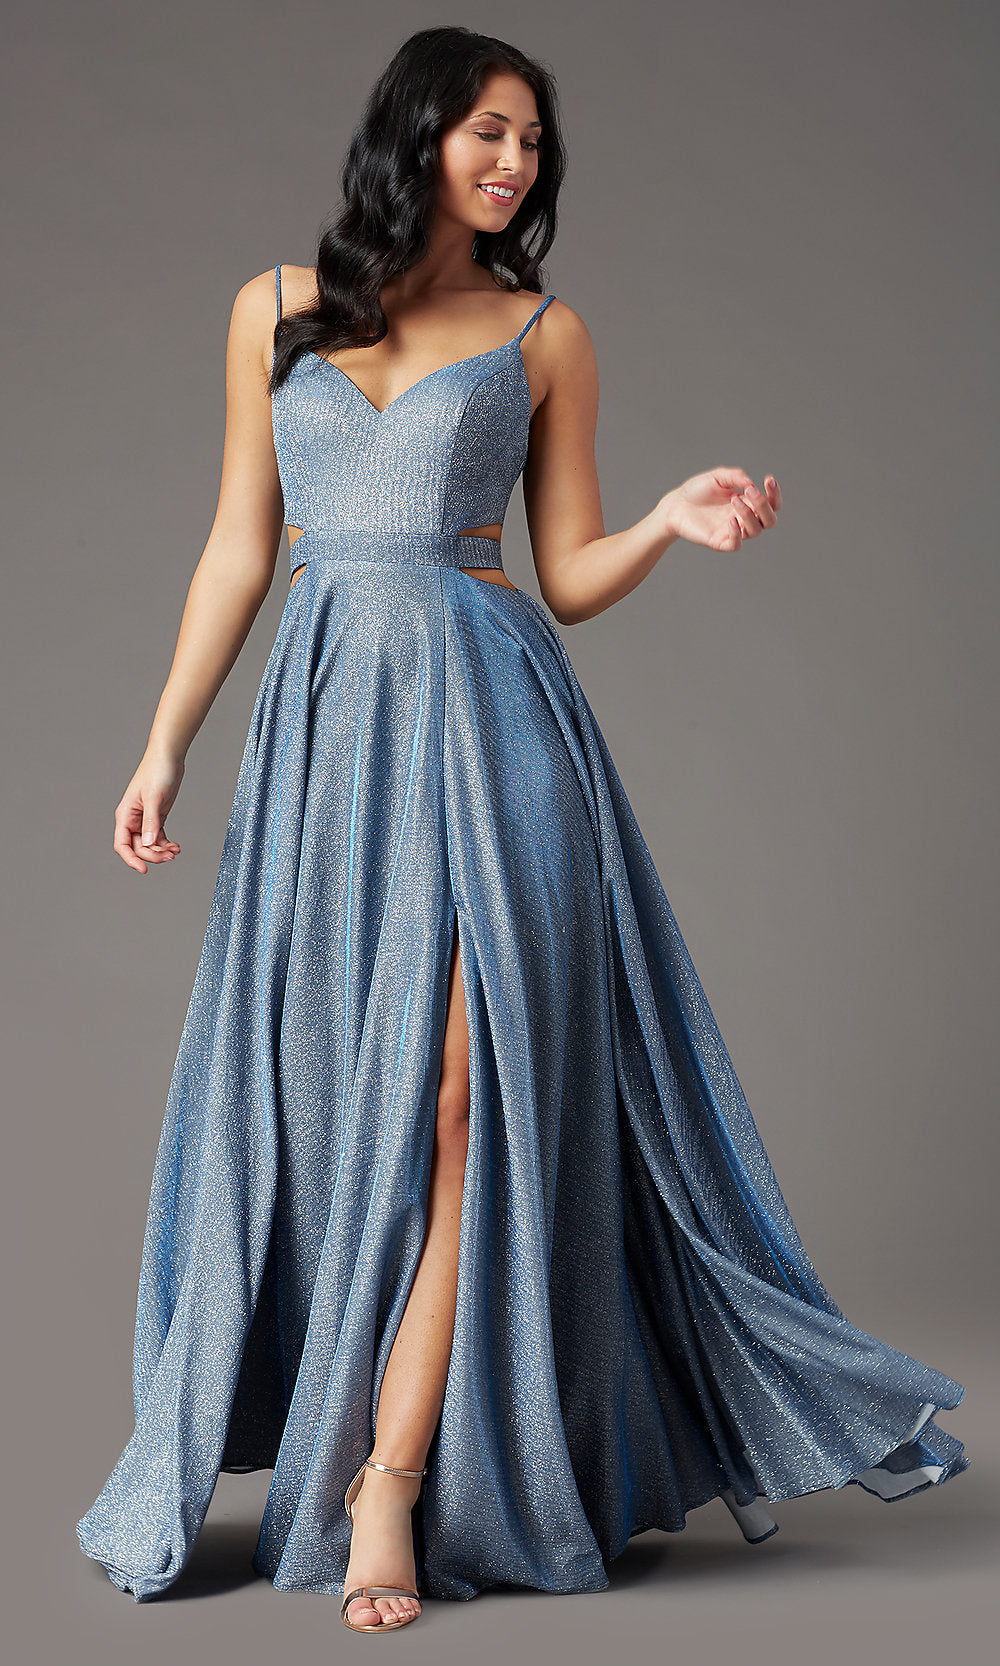 Dusty Blue PromGirl Glitter-Knit Long Dusty Blue Prom Dress